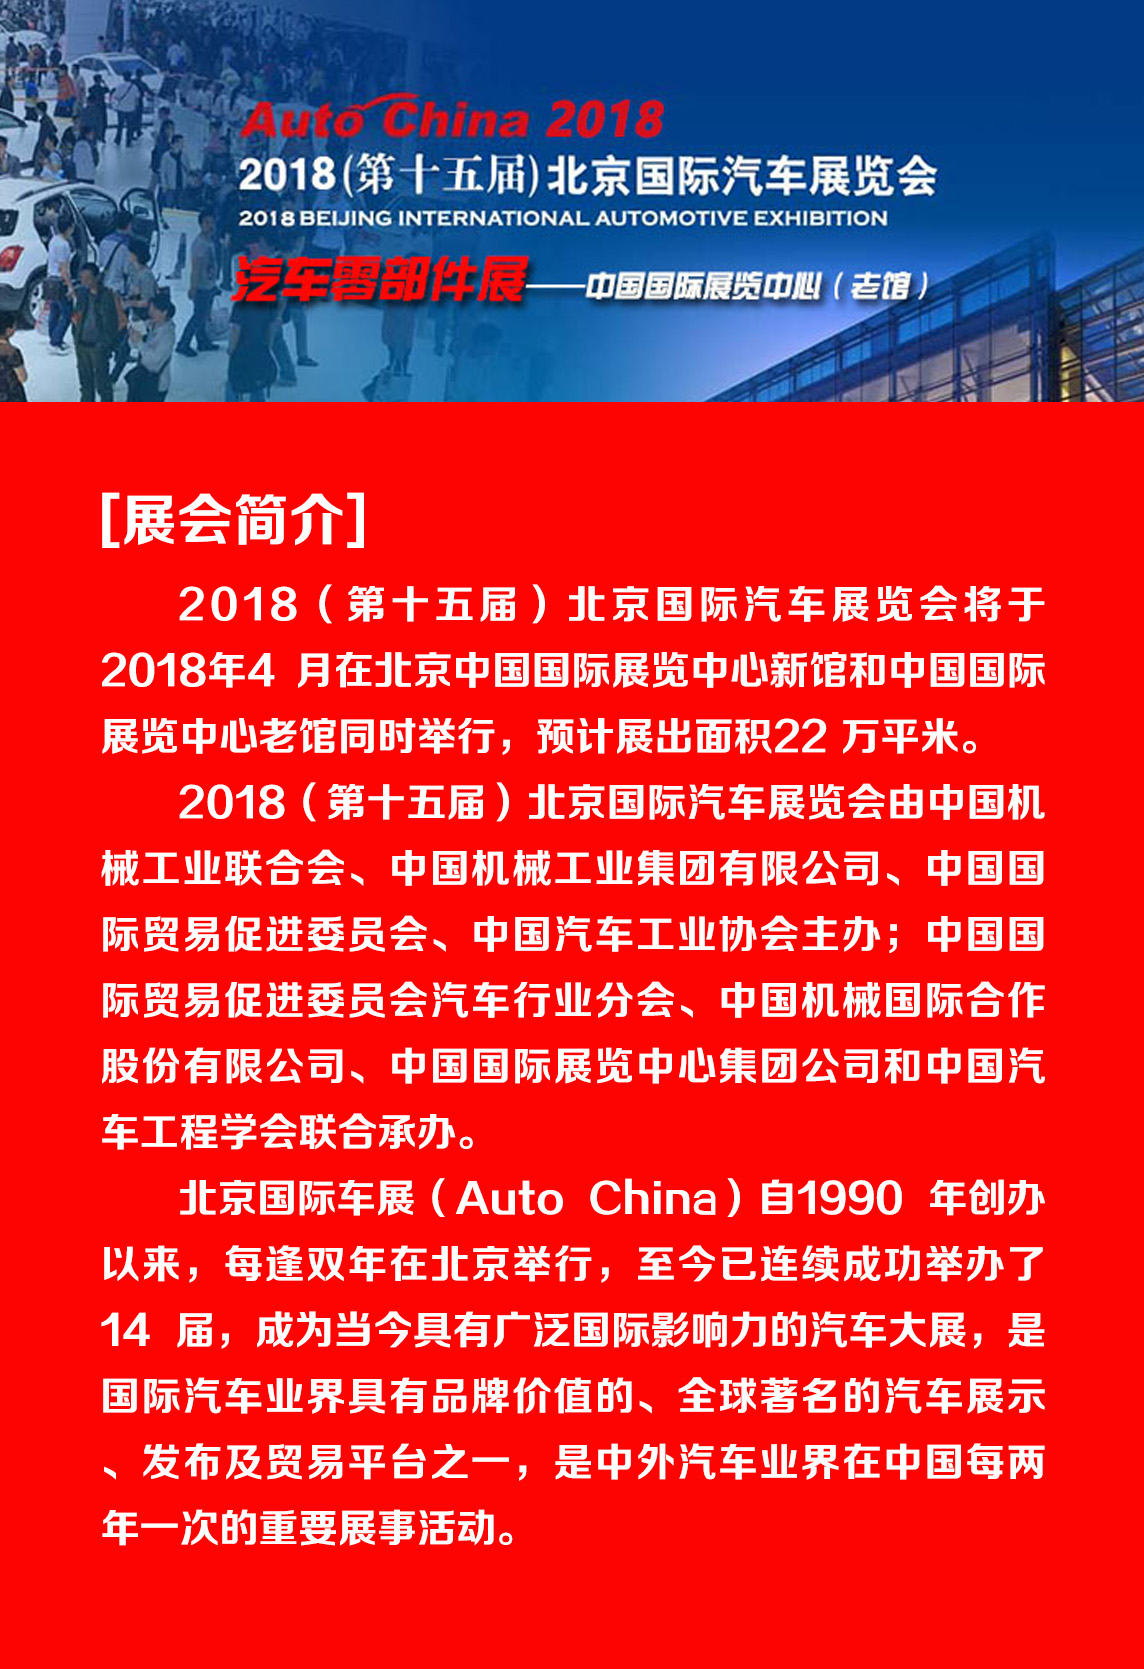 博盈彩票成功亮相2018北京国际汽车展览会